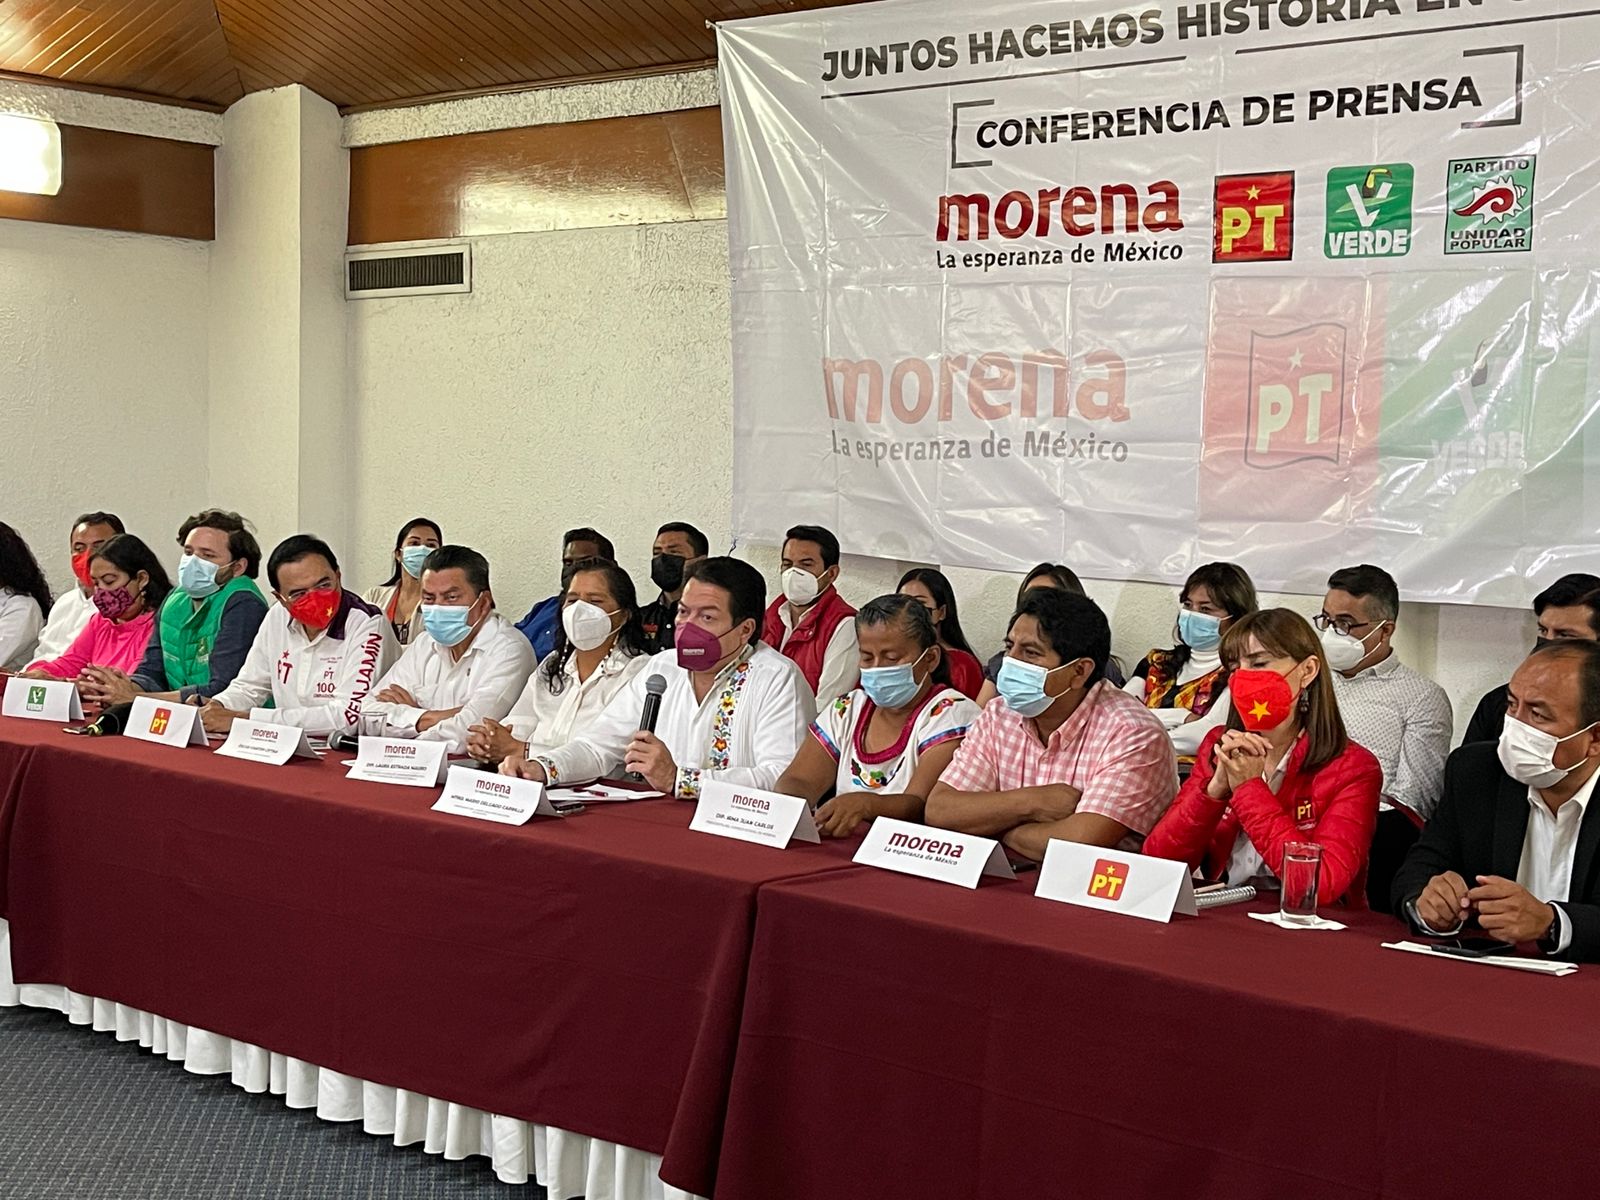 Limarán asperezas aspirantes a la candidatura de Morena en Oaxaca: Mario Delgado